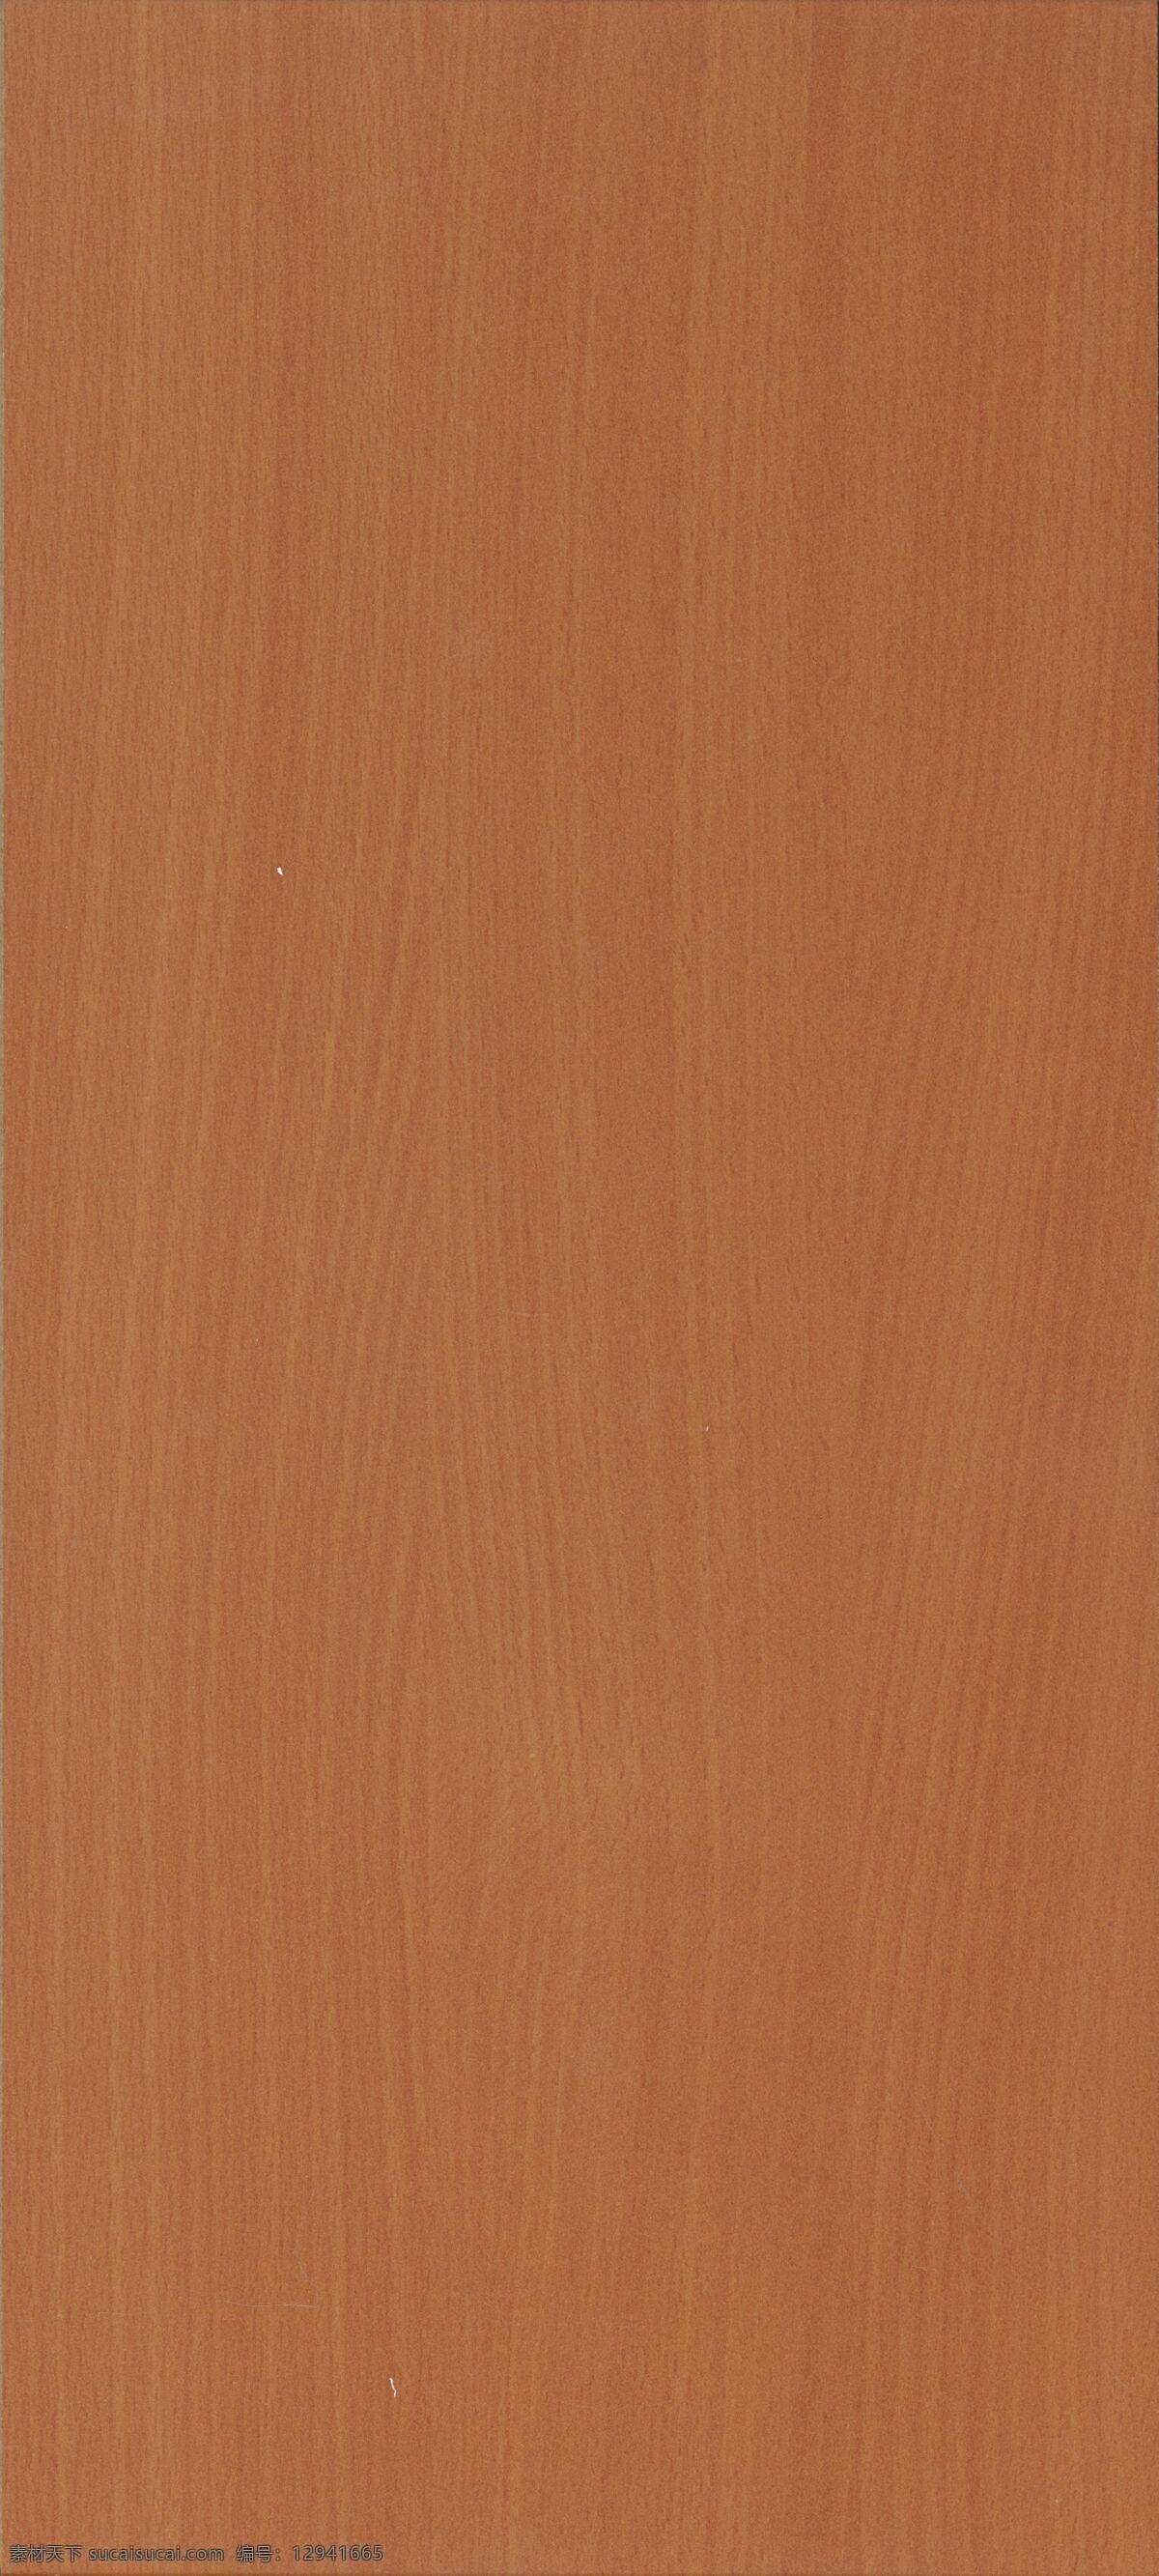 木纹 贴图 地板 木板 木纹贴图 浅色 3dsmax 古典红木 3d模型素材 材质贴图